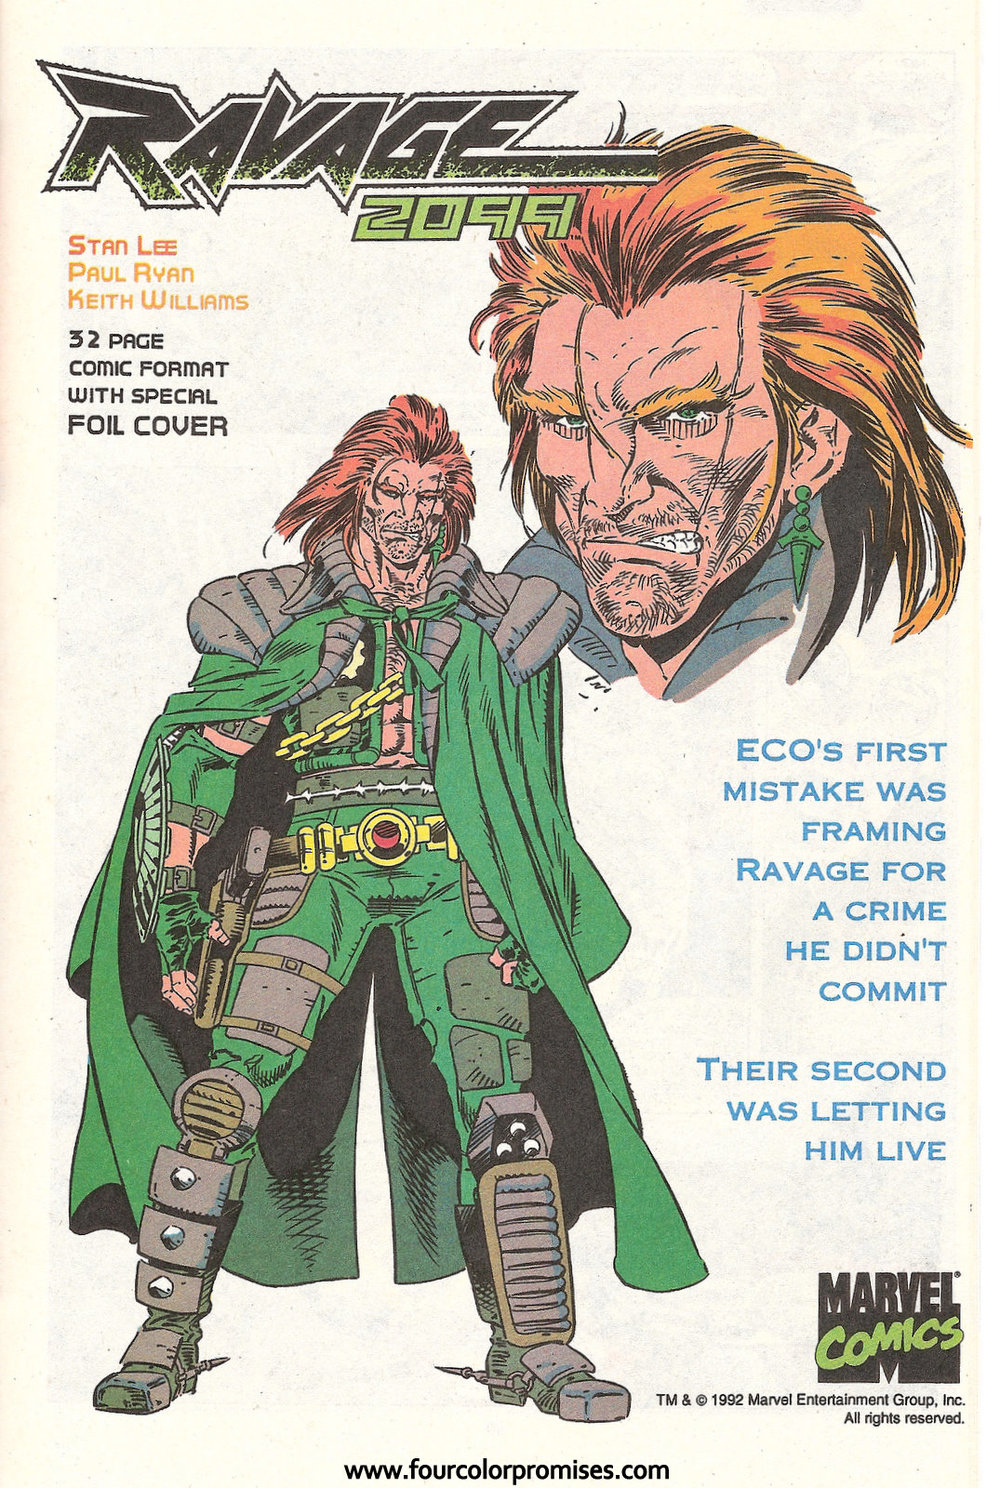 Ravage 2099 #13 December 1993 Marvel Comics